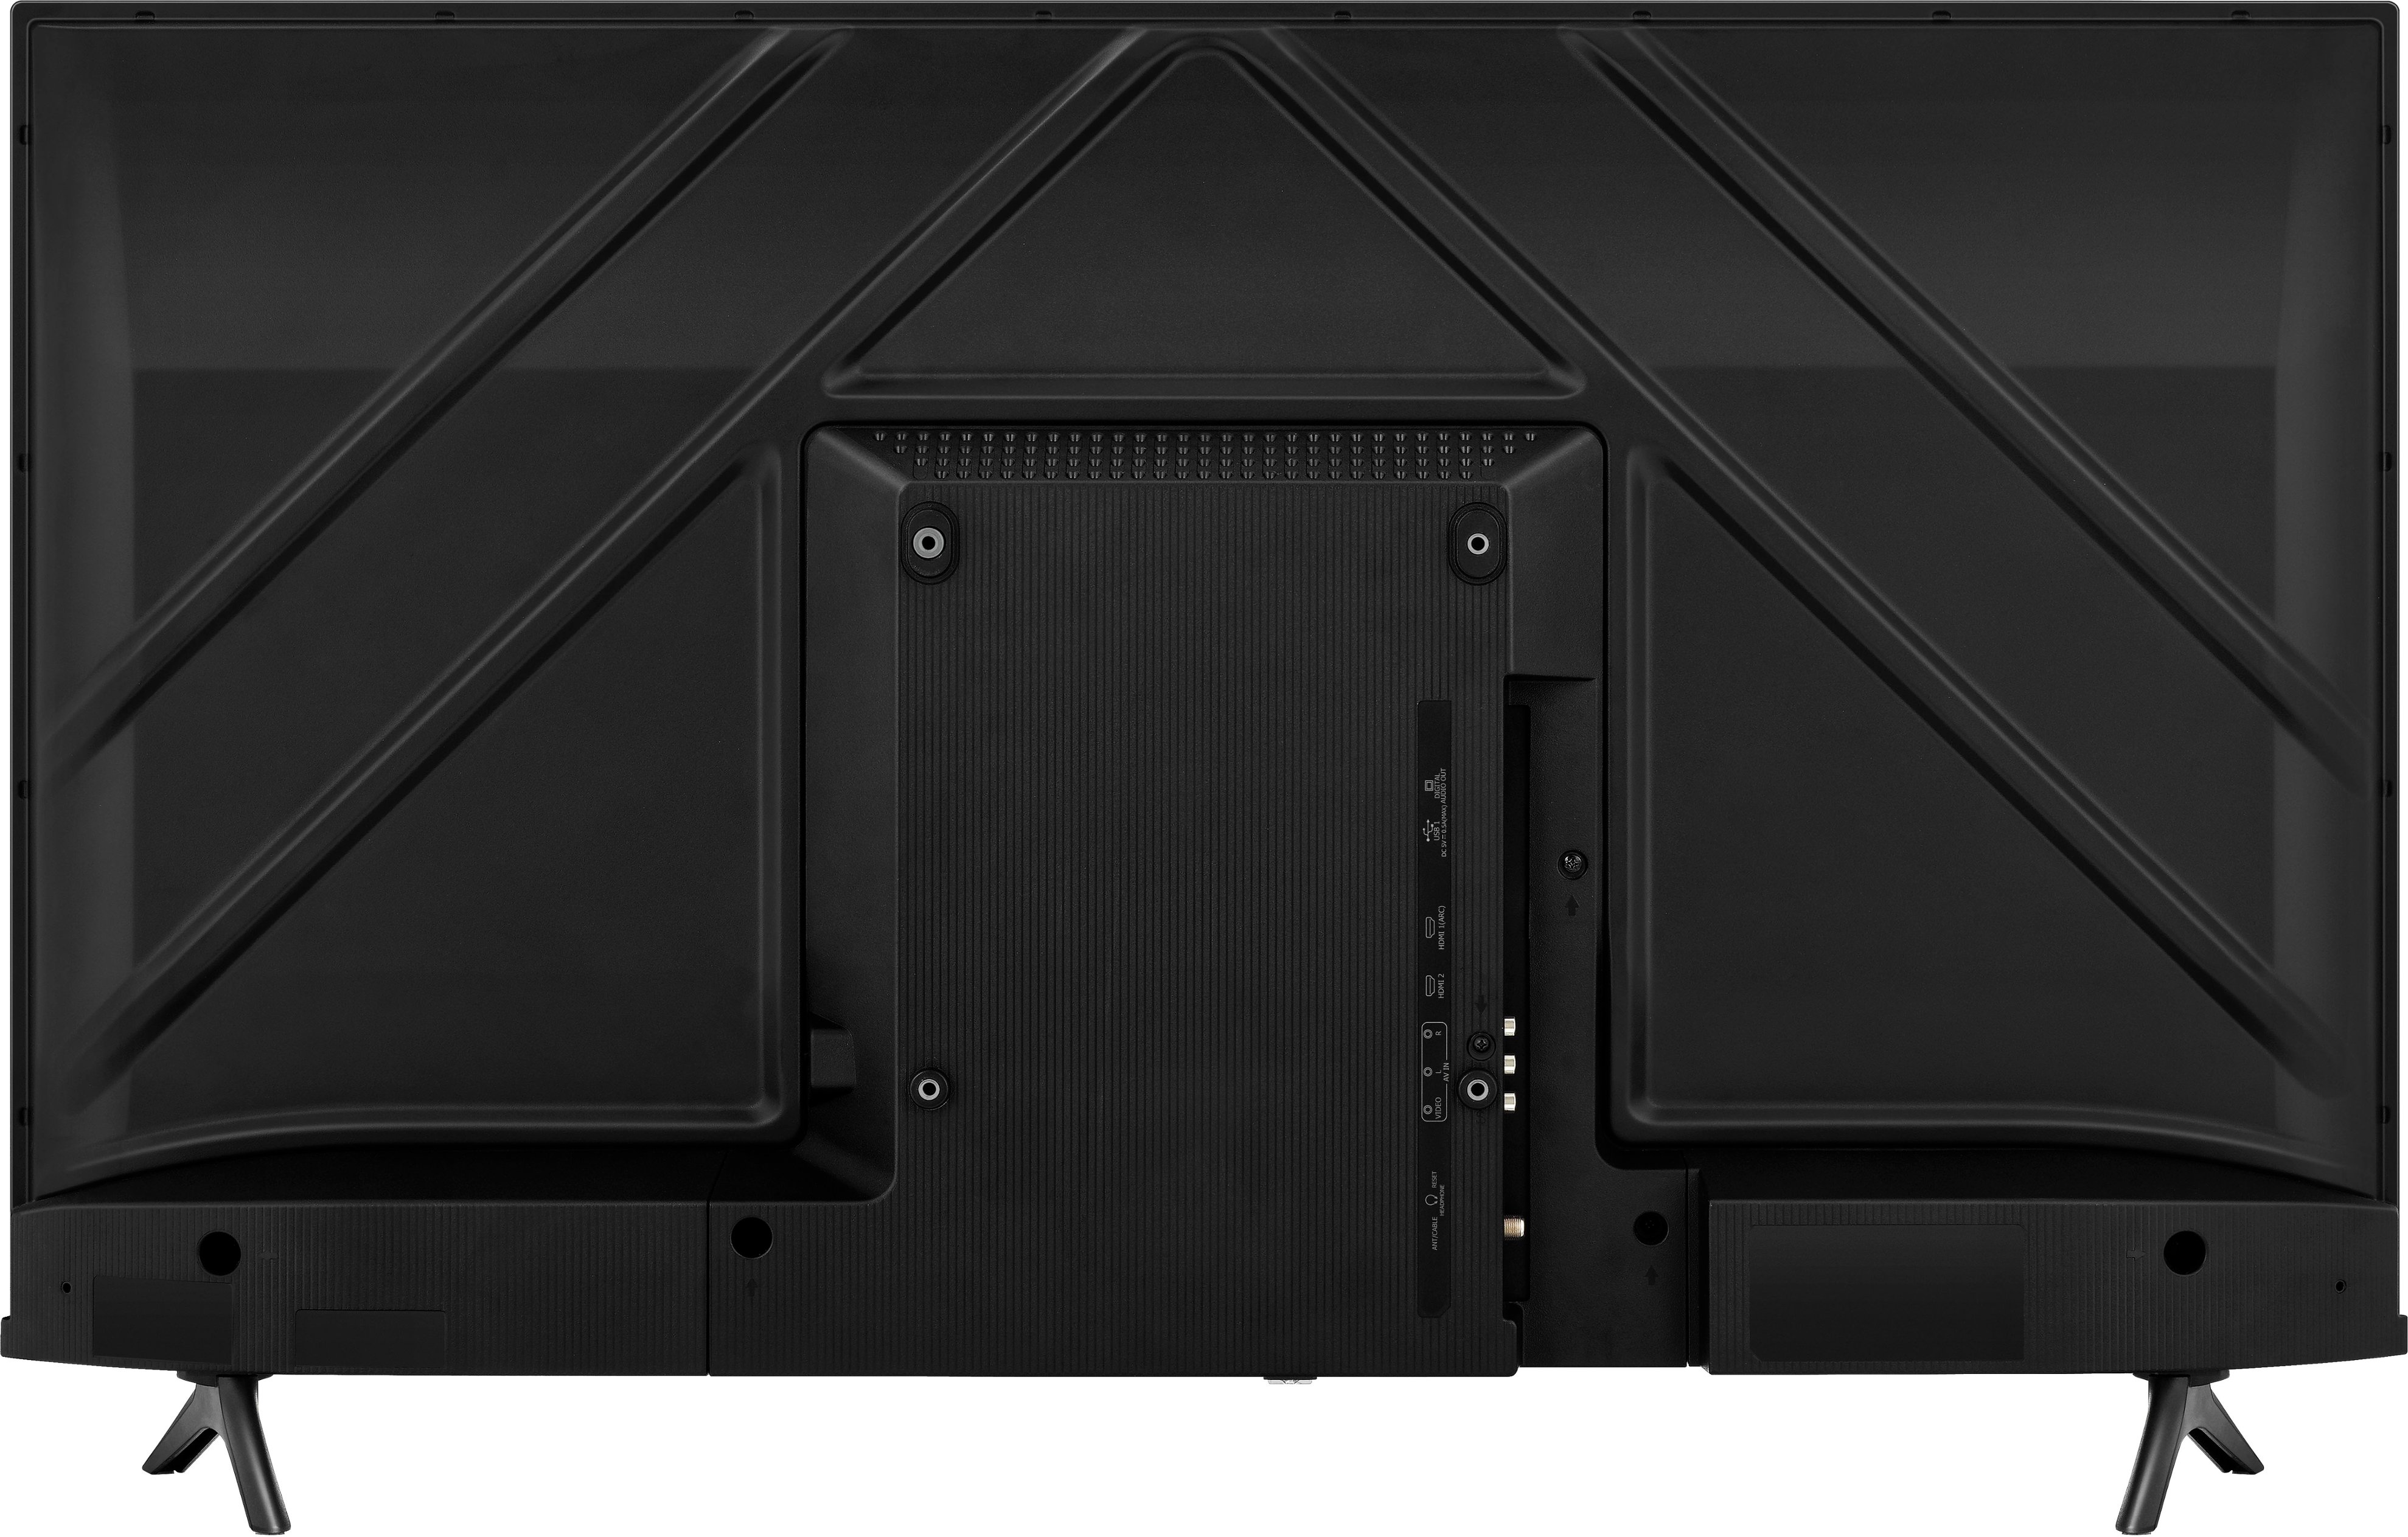 Hisense 43A69K 43 4k ultra hd led smart tv - black